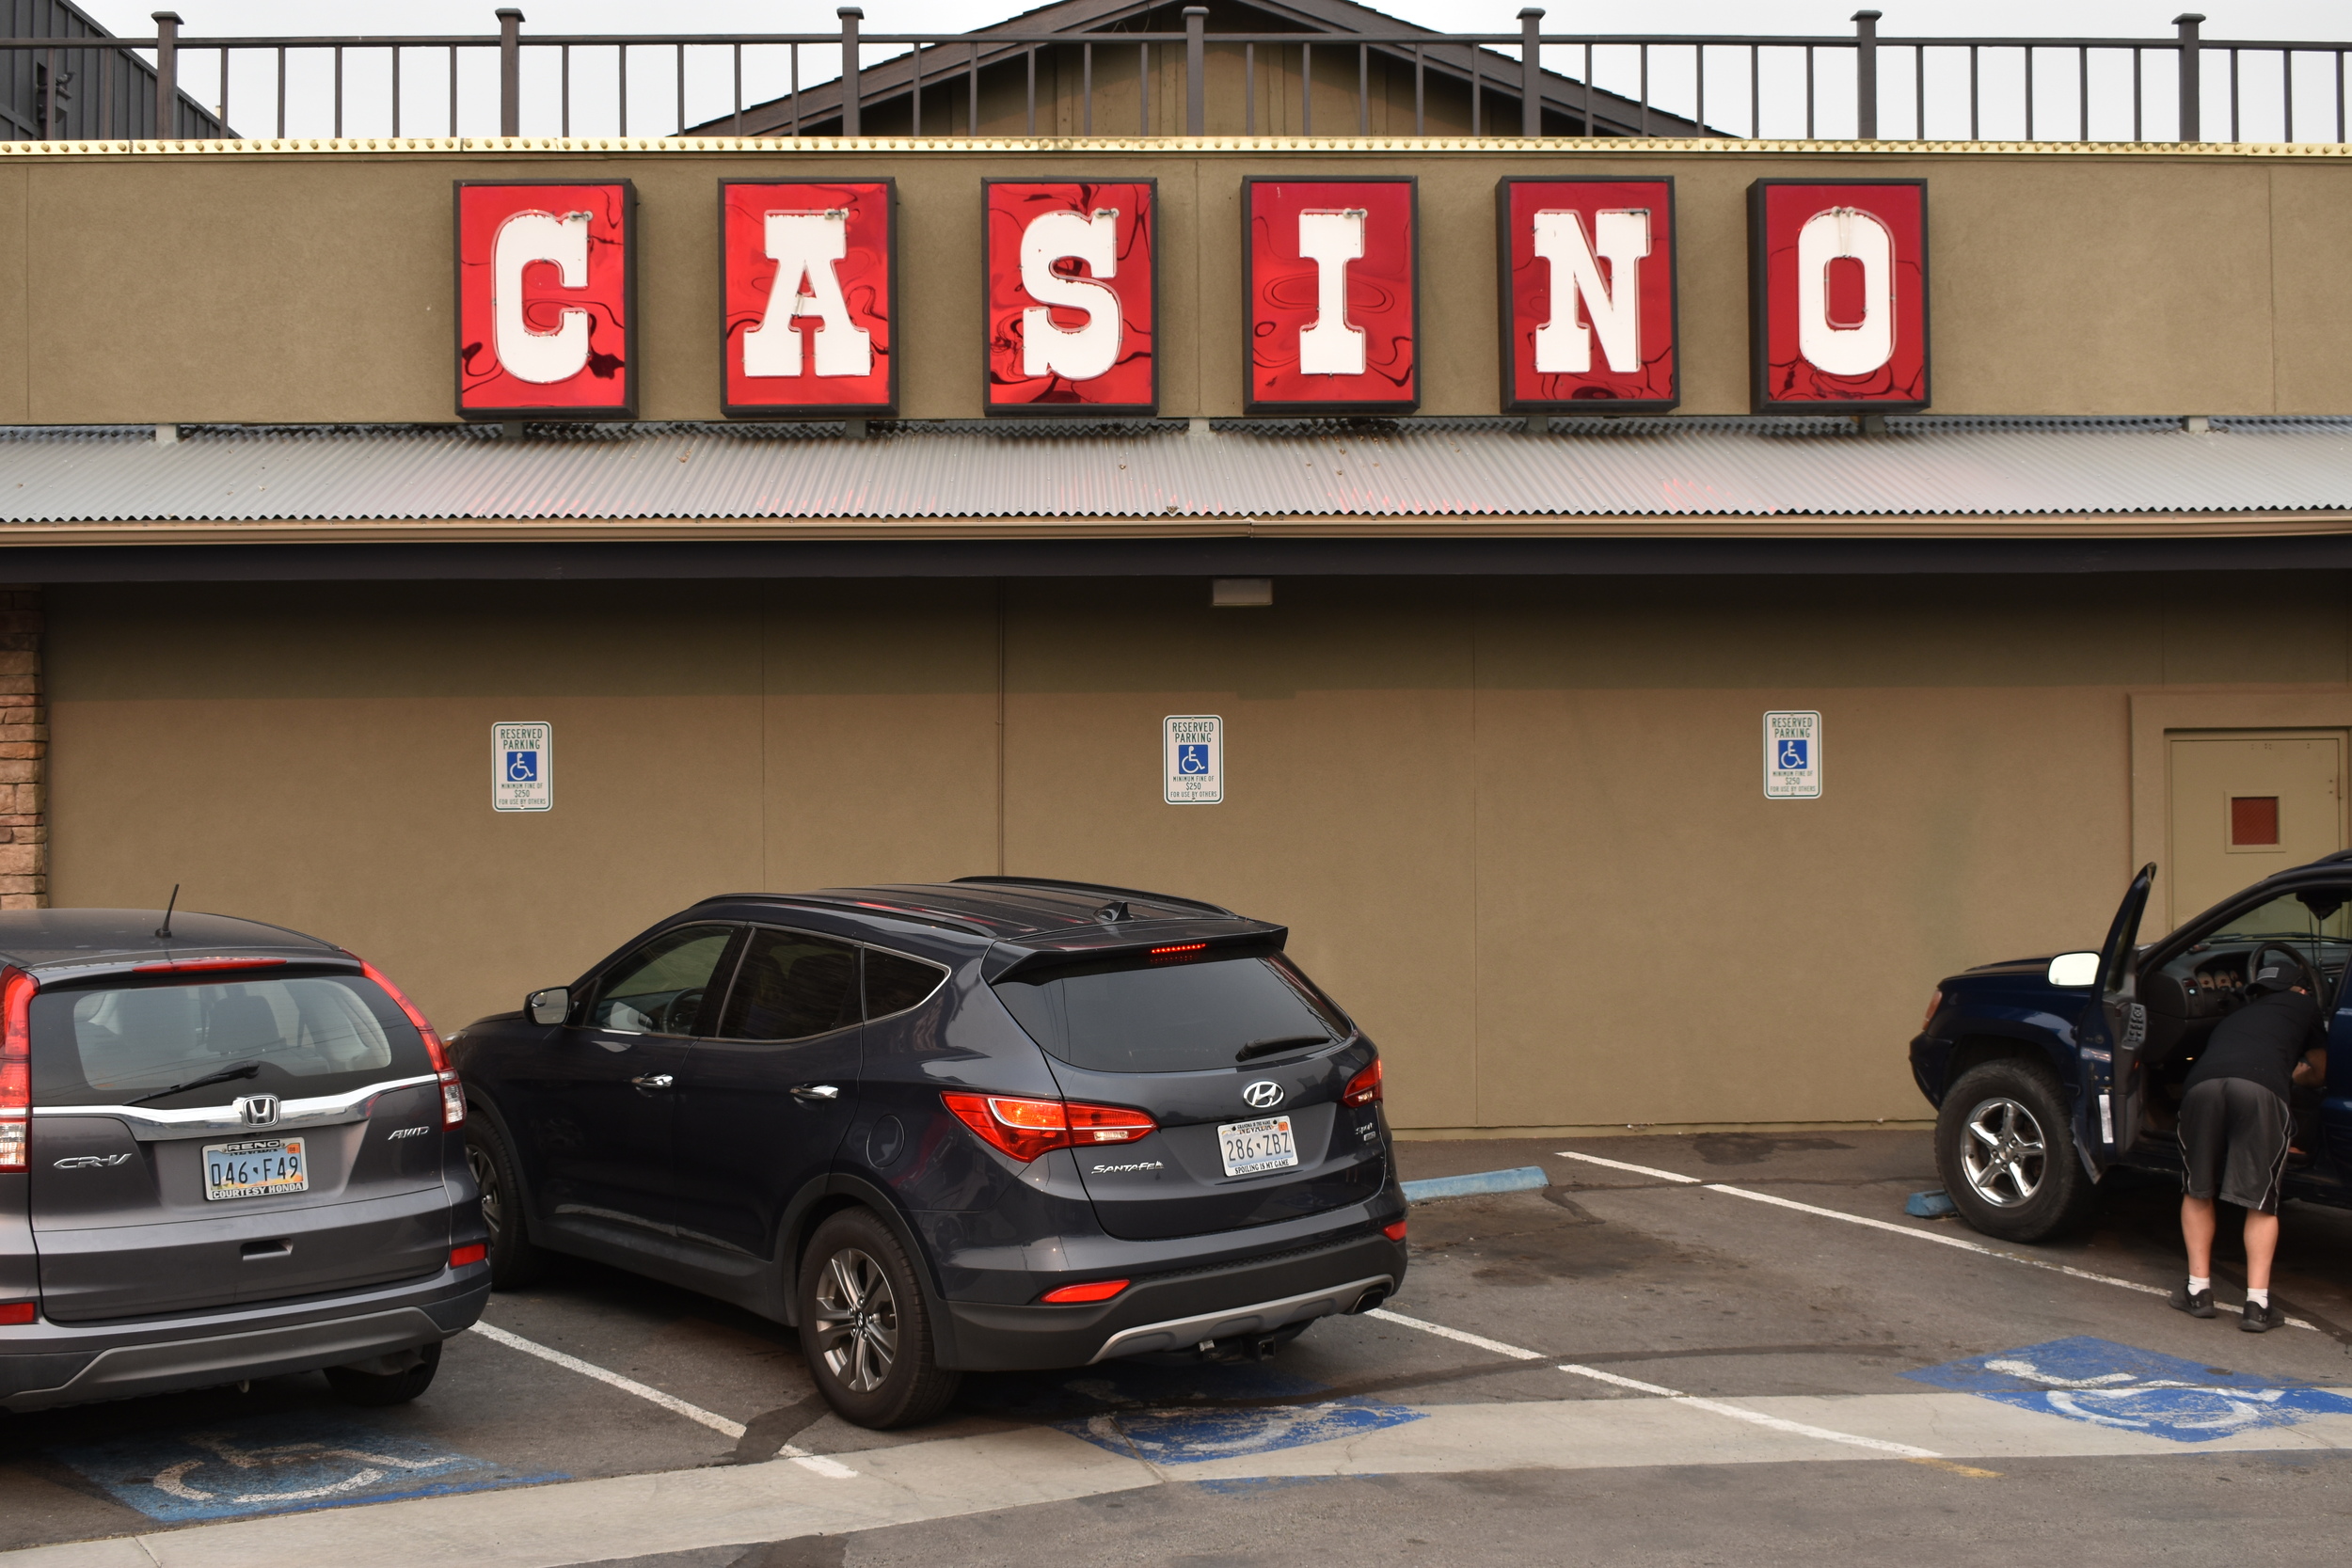 Unknown casino sign, Reno, Nevada